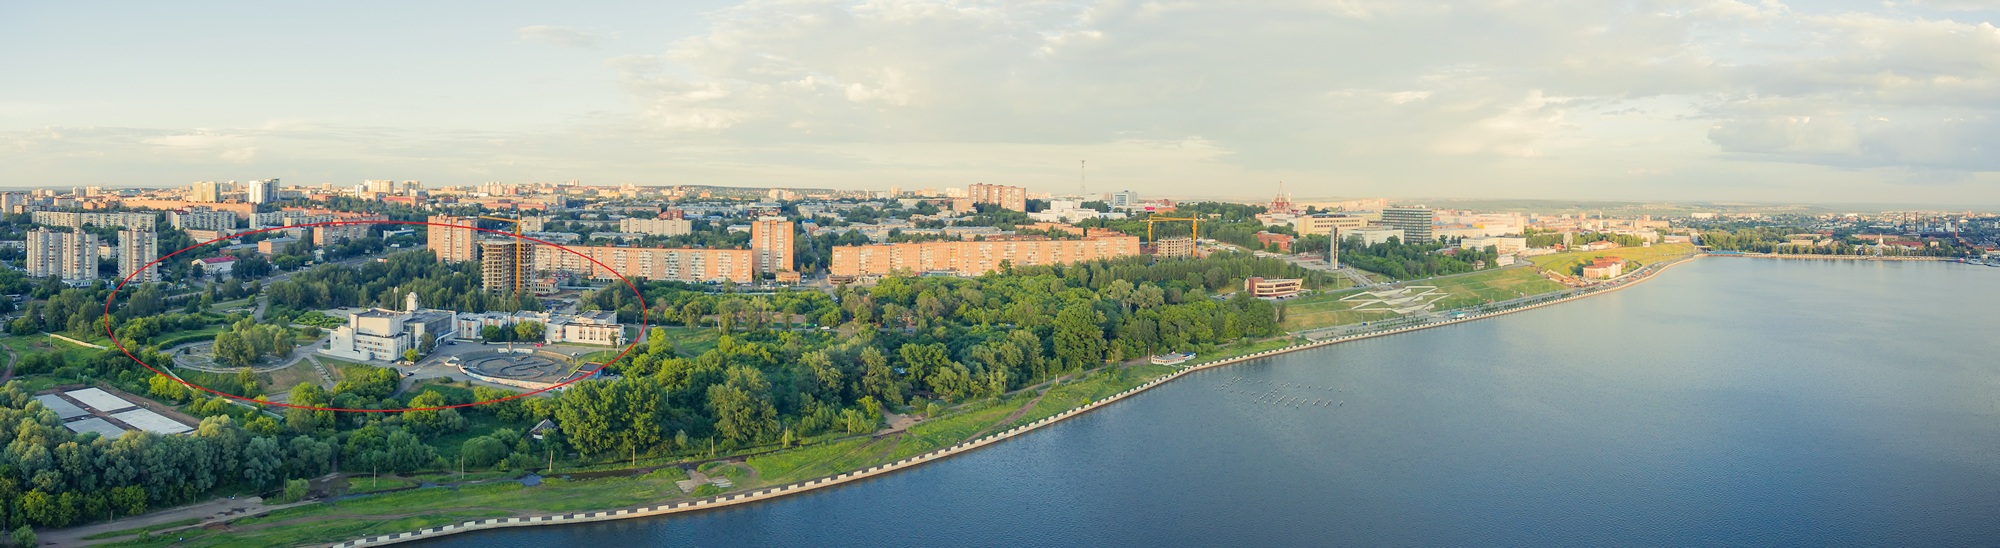 Конкурсная территория на панорамной съемке набережной. Фото: А. В. Дёмышев